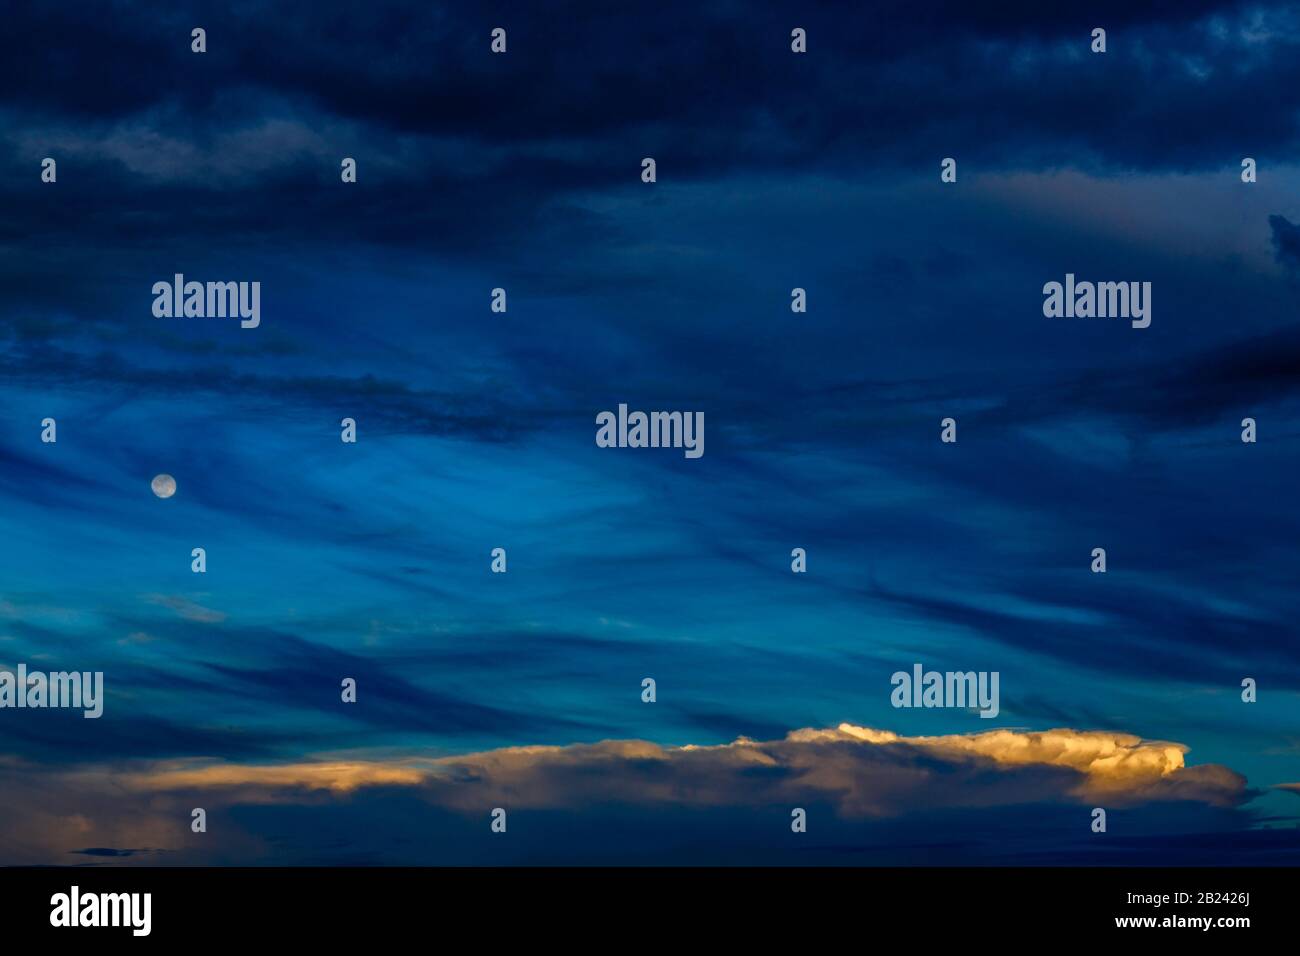 Espectacular paisaje nocturno azul a capas con luna y pequeñas nubes blancas Foto de stock